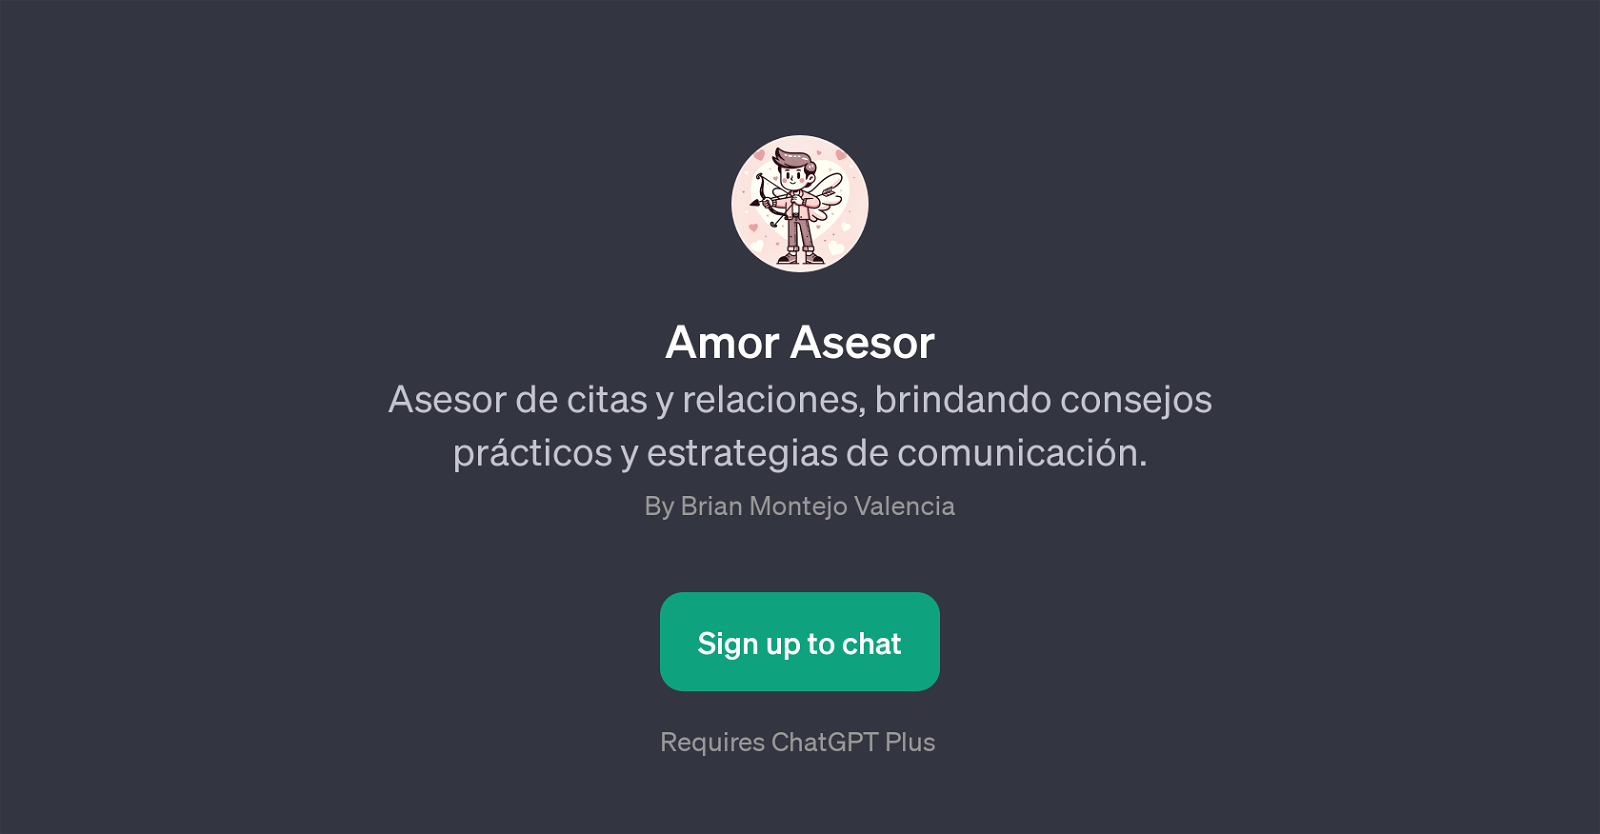 Amor Asesor website